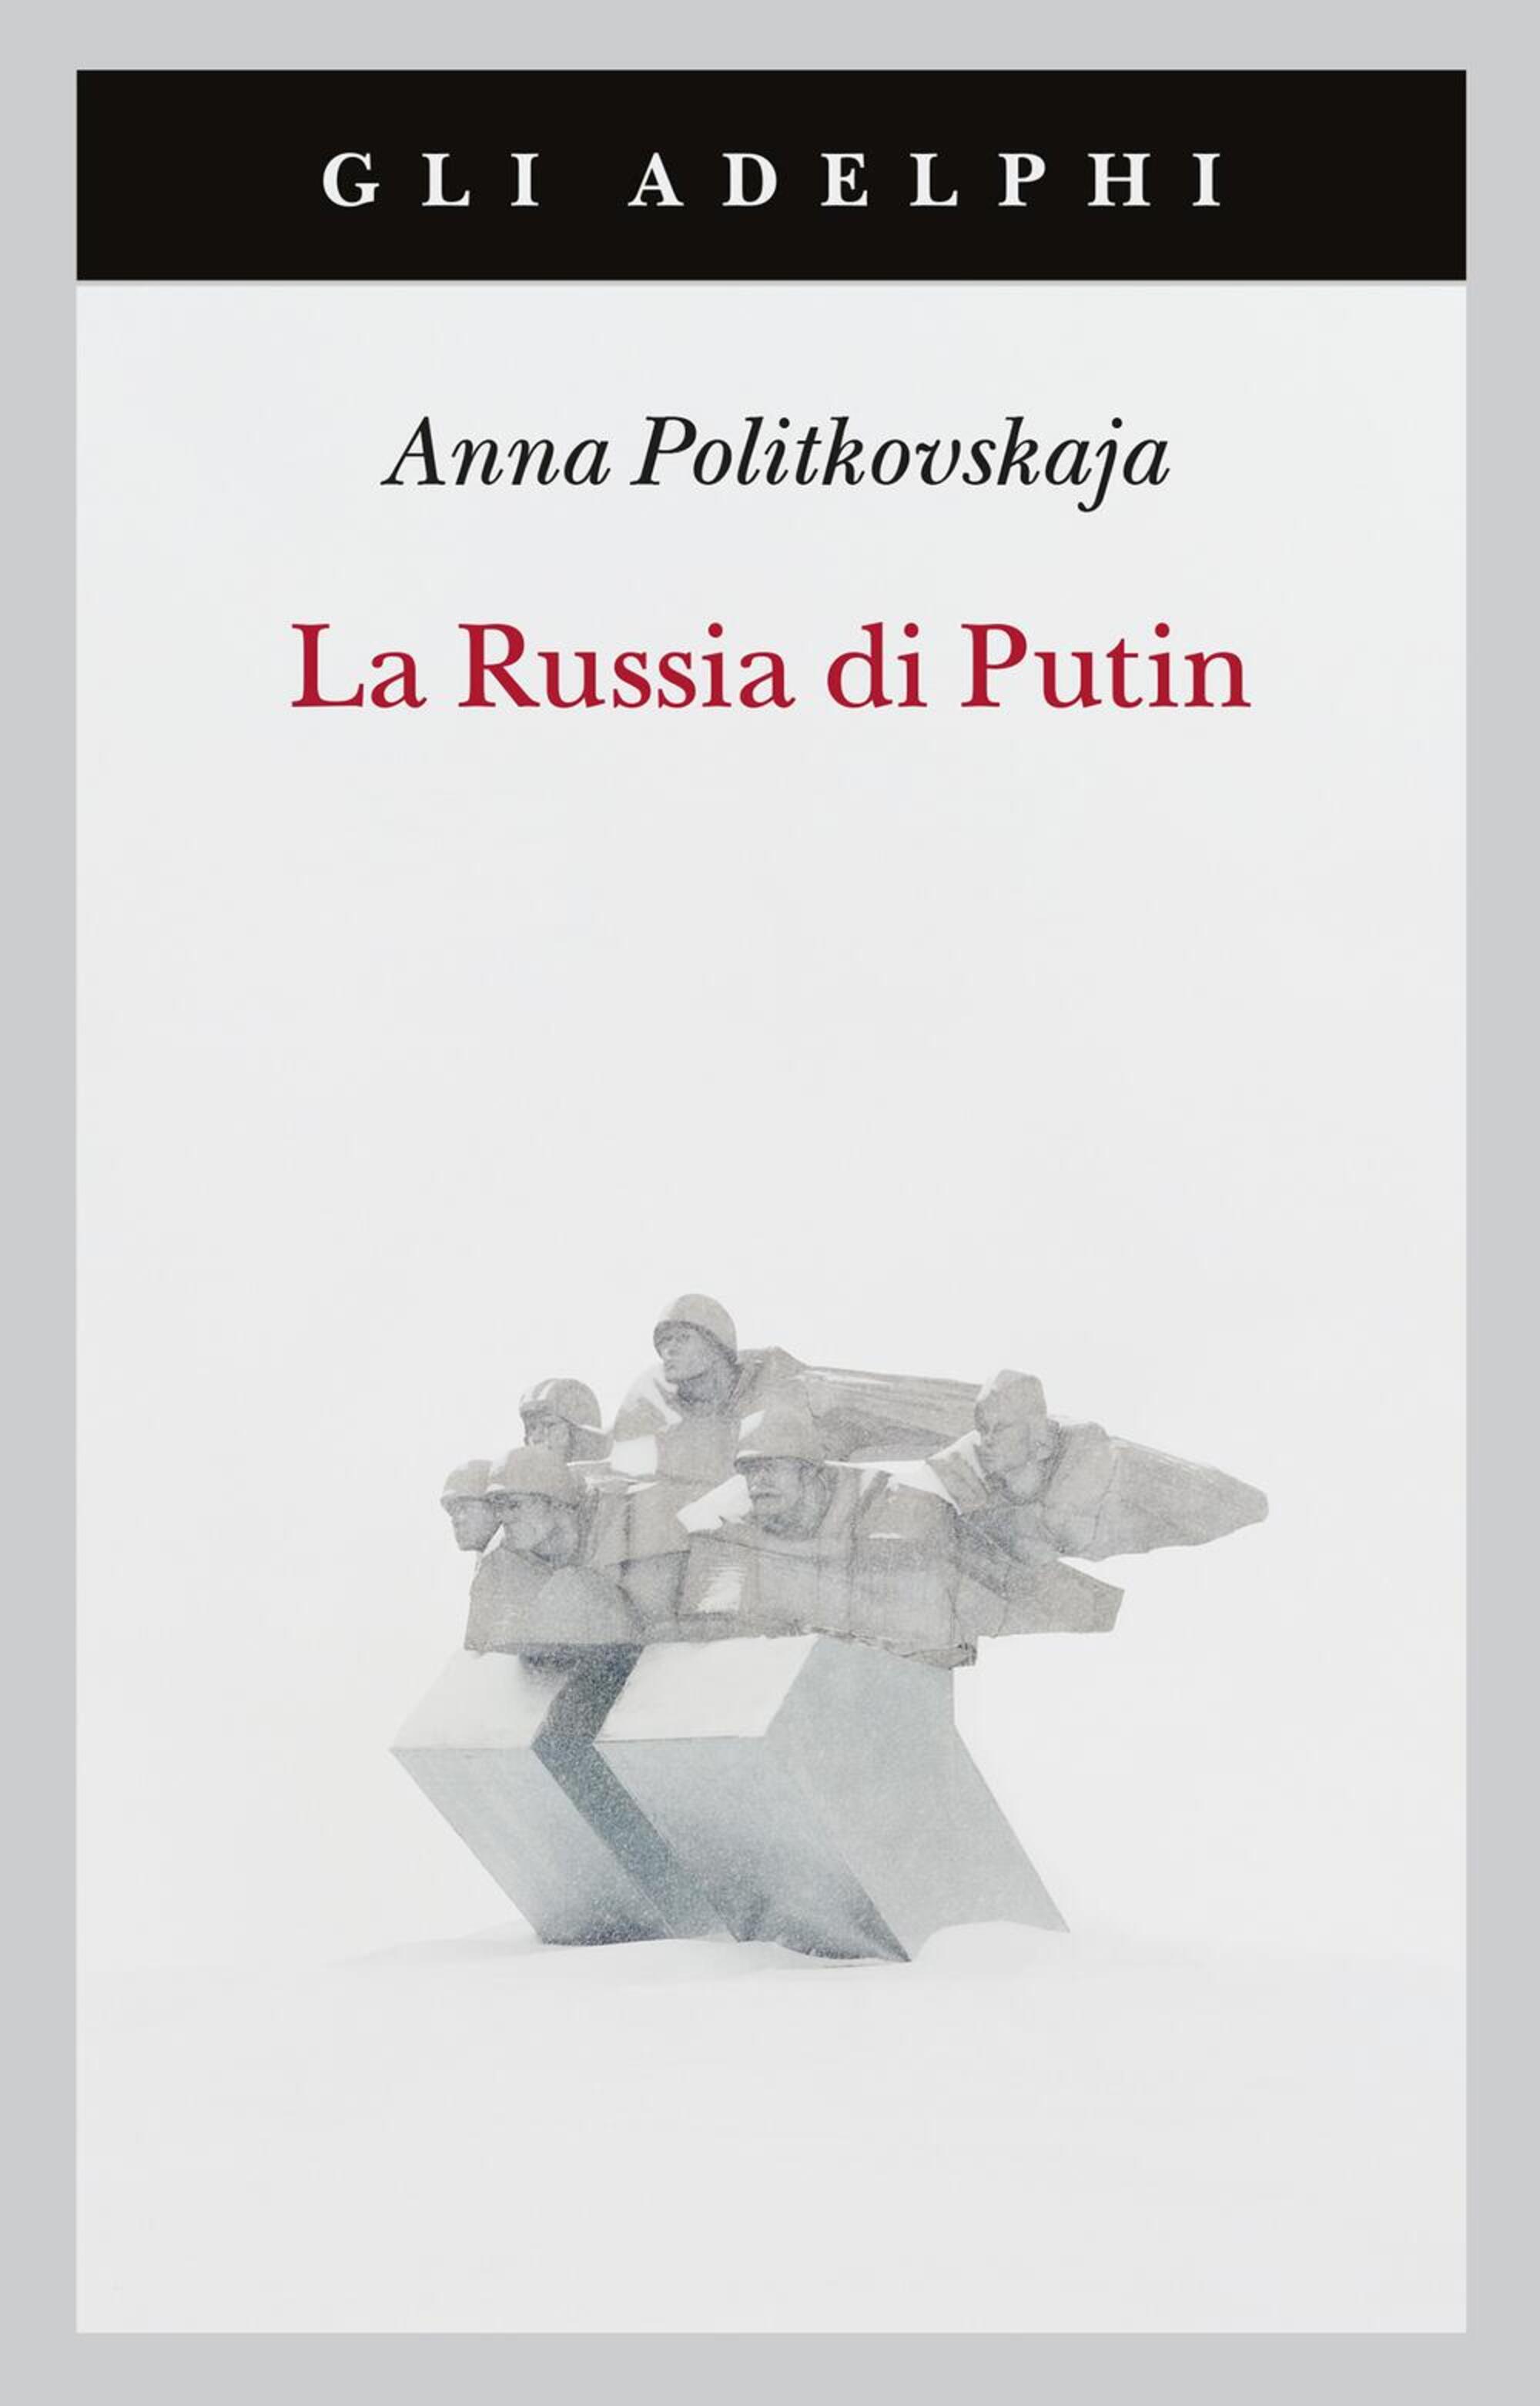 Uno dei libri pi&ugrave; famosi di Anna Politkovskaya, tradotto in Italia da Adelphi